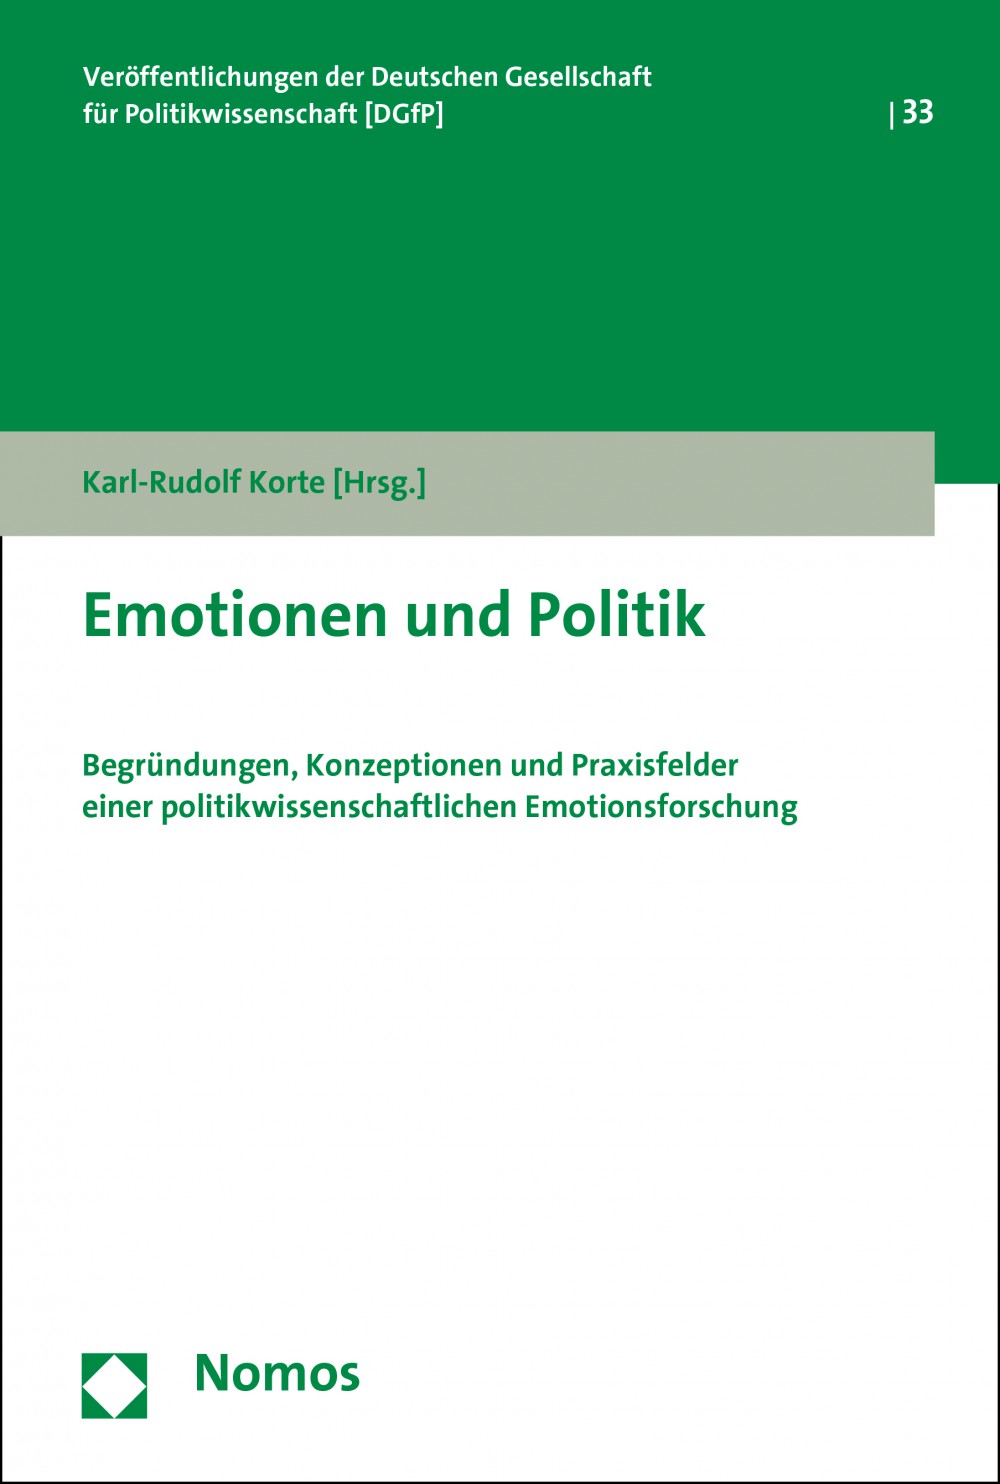 Emotionen und Politik